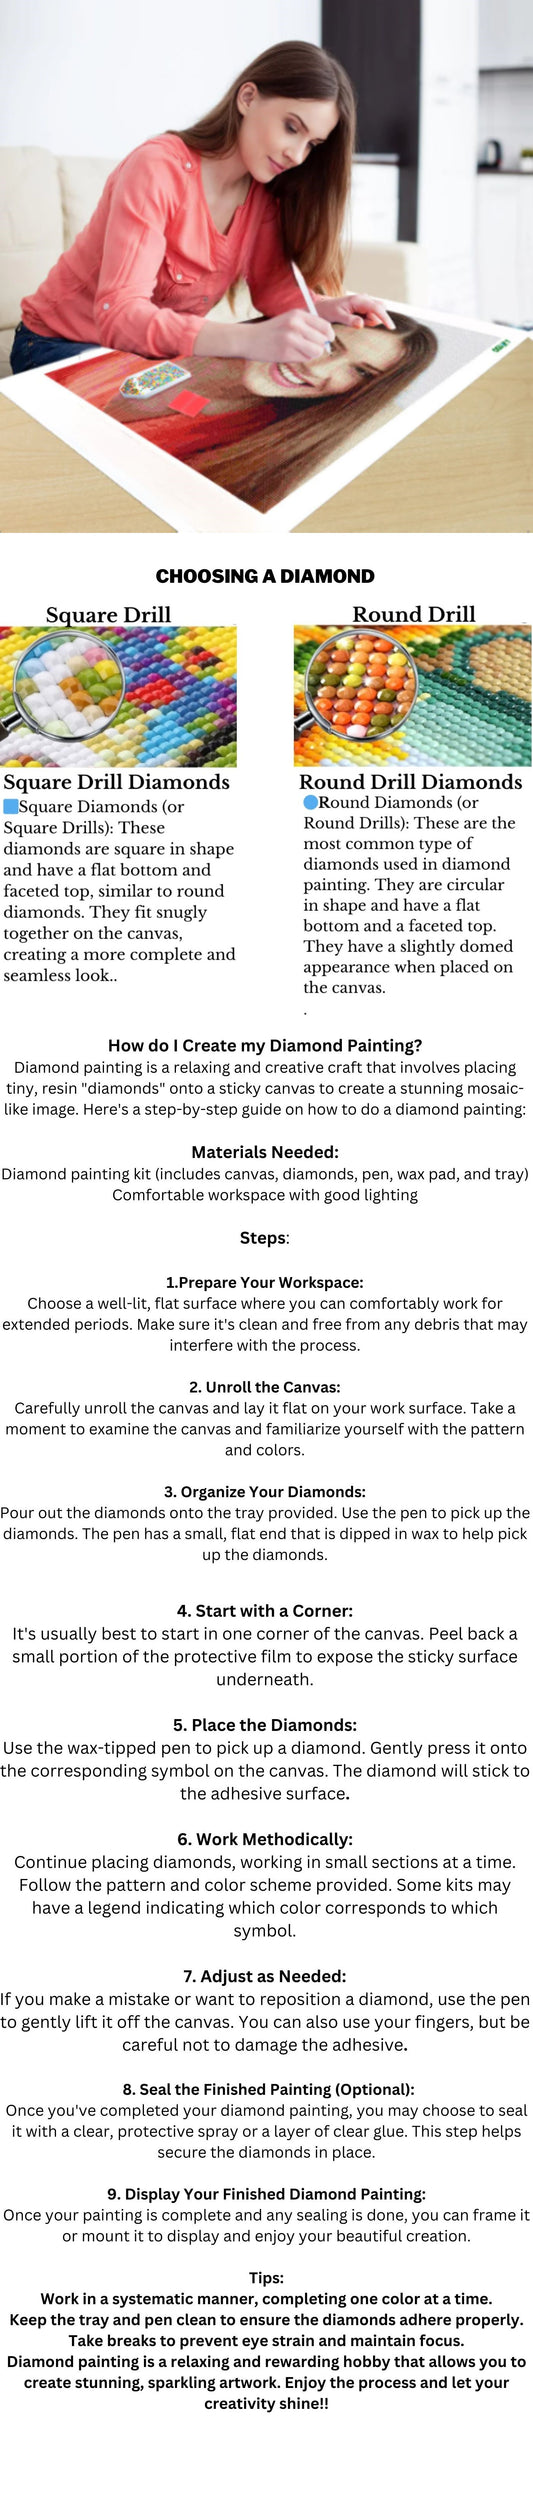 Custom Diamond Painting